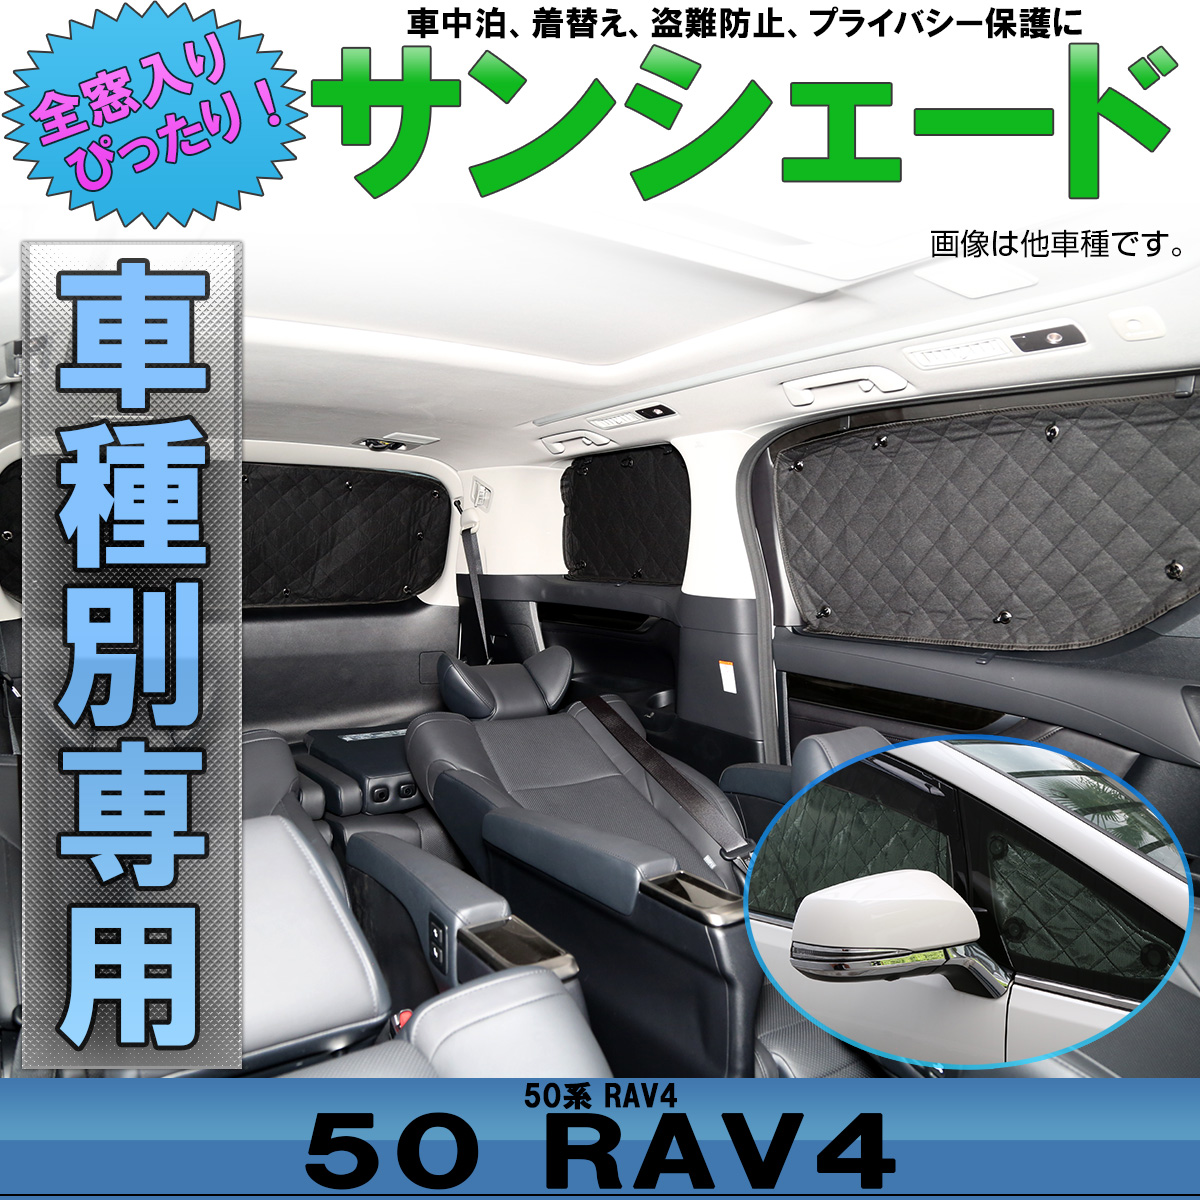 50系 Rav4 サンシェード 専用設計 全窓用 8枚セット 5層構造 ブラックメッシュ 車中泊 S 9